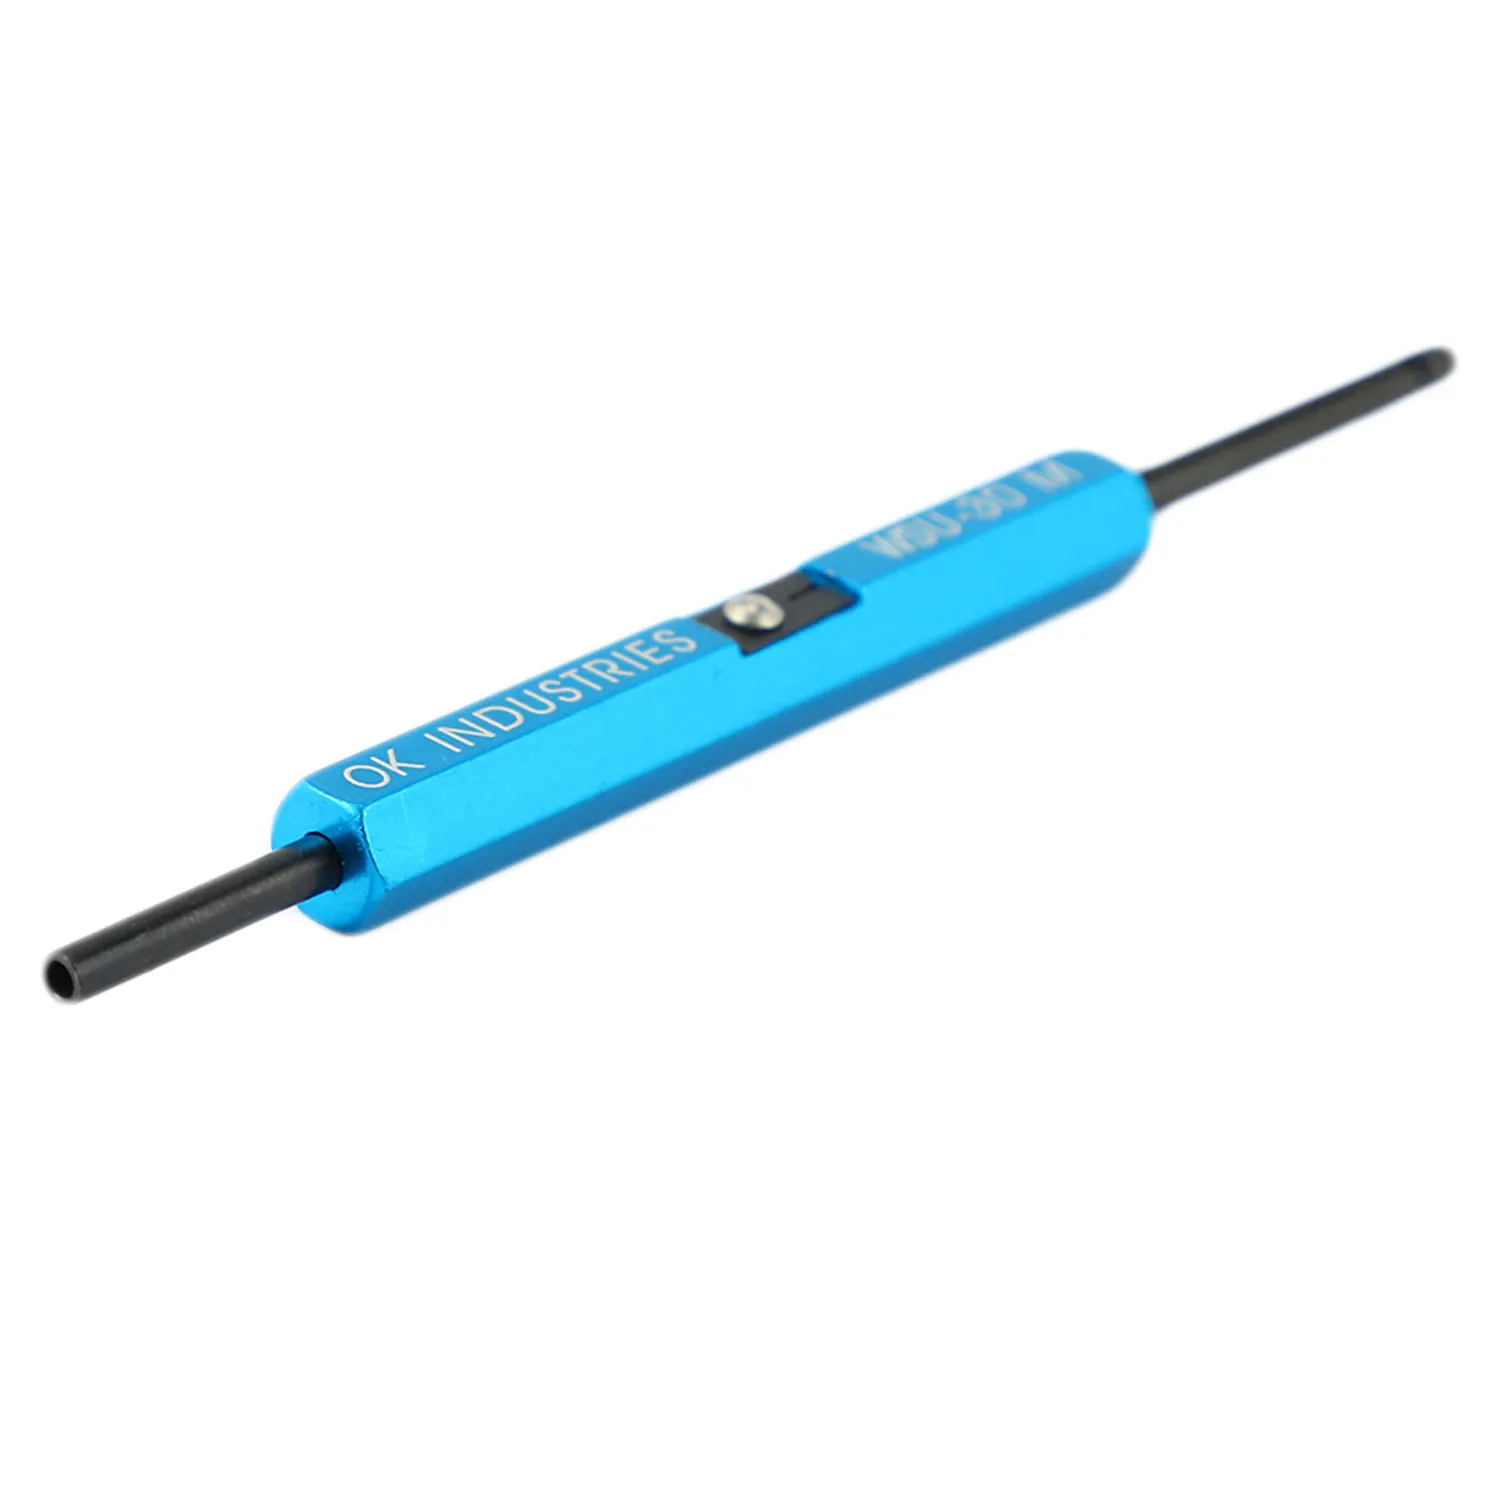 Новый Прочный Ручной Инструмент для намотки проволоки Wsu-30M Инструмент для разворачивания ленты для намотки прототипов кабелей Awg 30